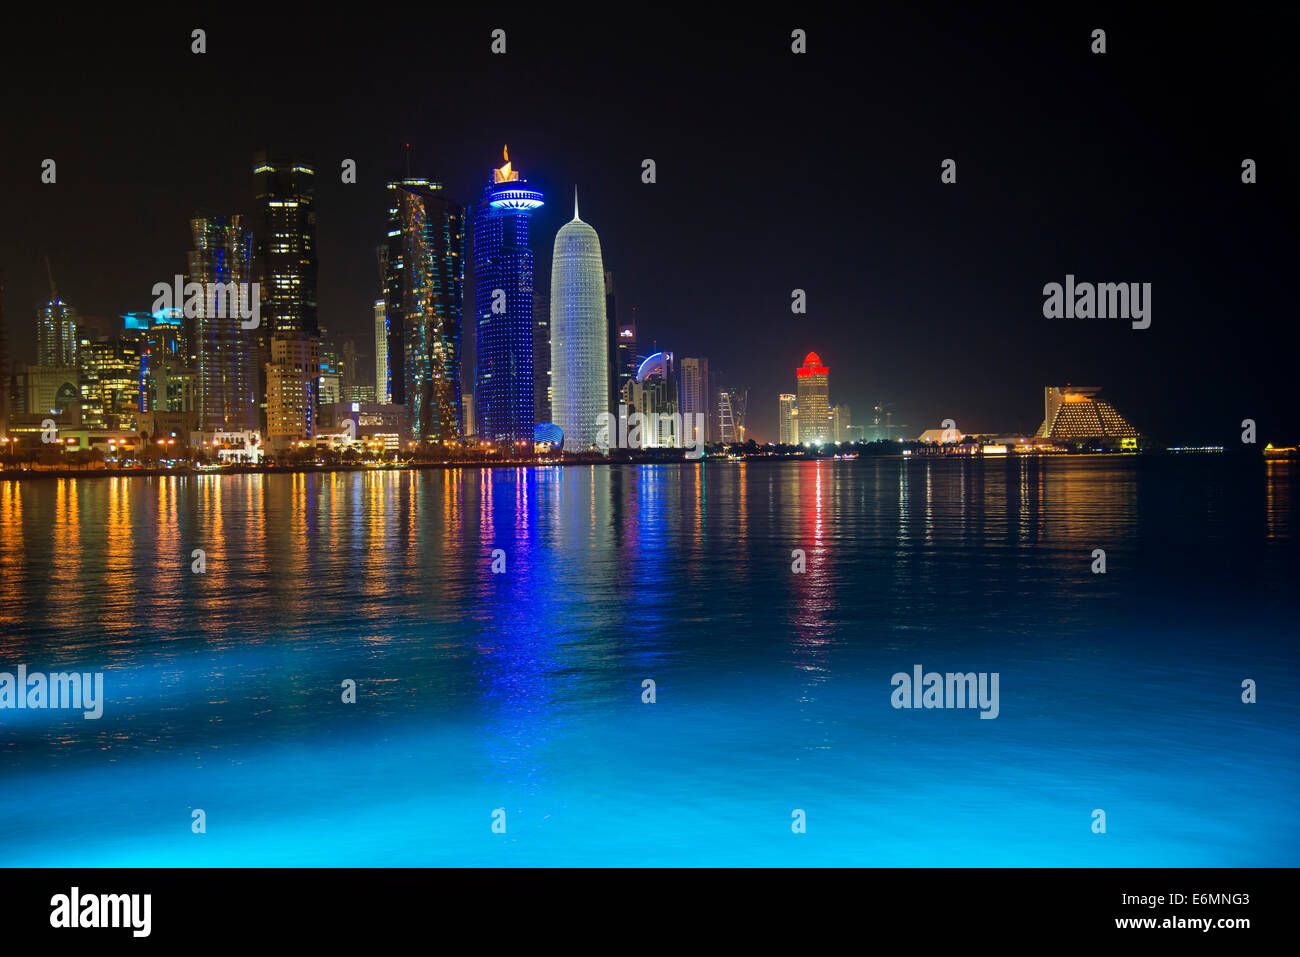 Scène de nuit de l'horizon de Doha avec Al Bidda Tower, World Trade Center, Palm Tower 1 et 2, la tour Burj Qatar, Doha Corniche Banque D'Images